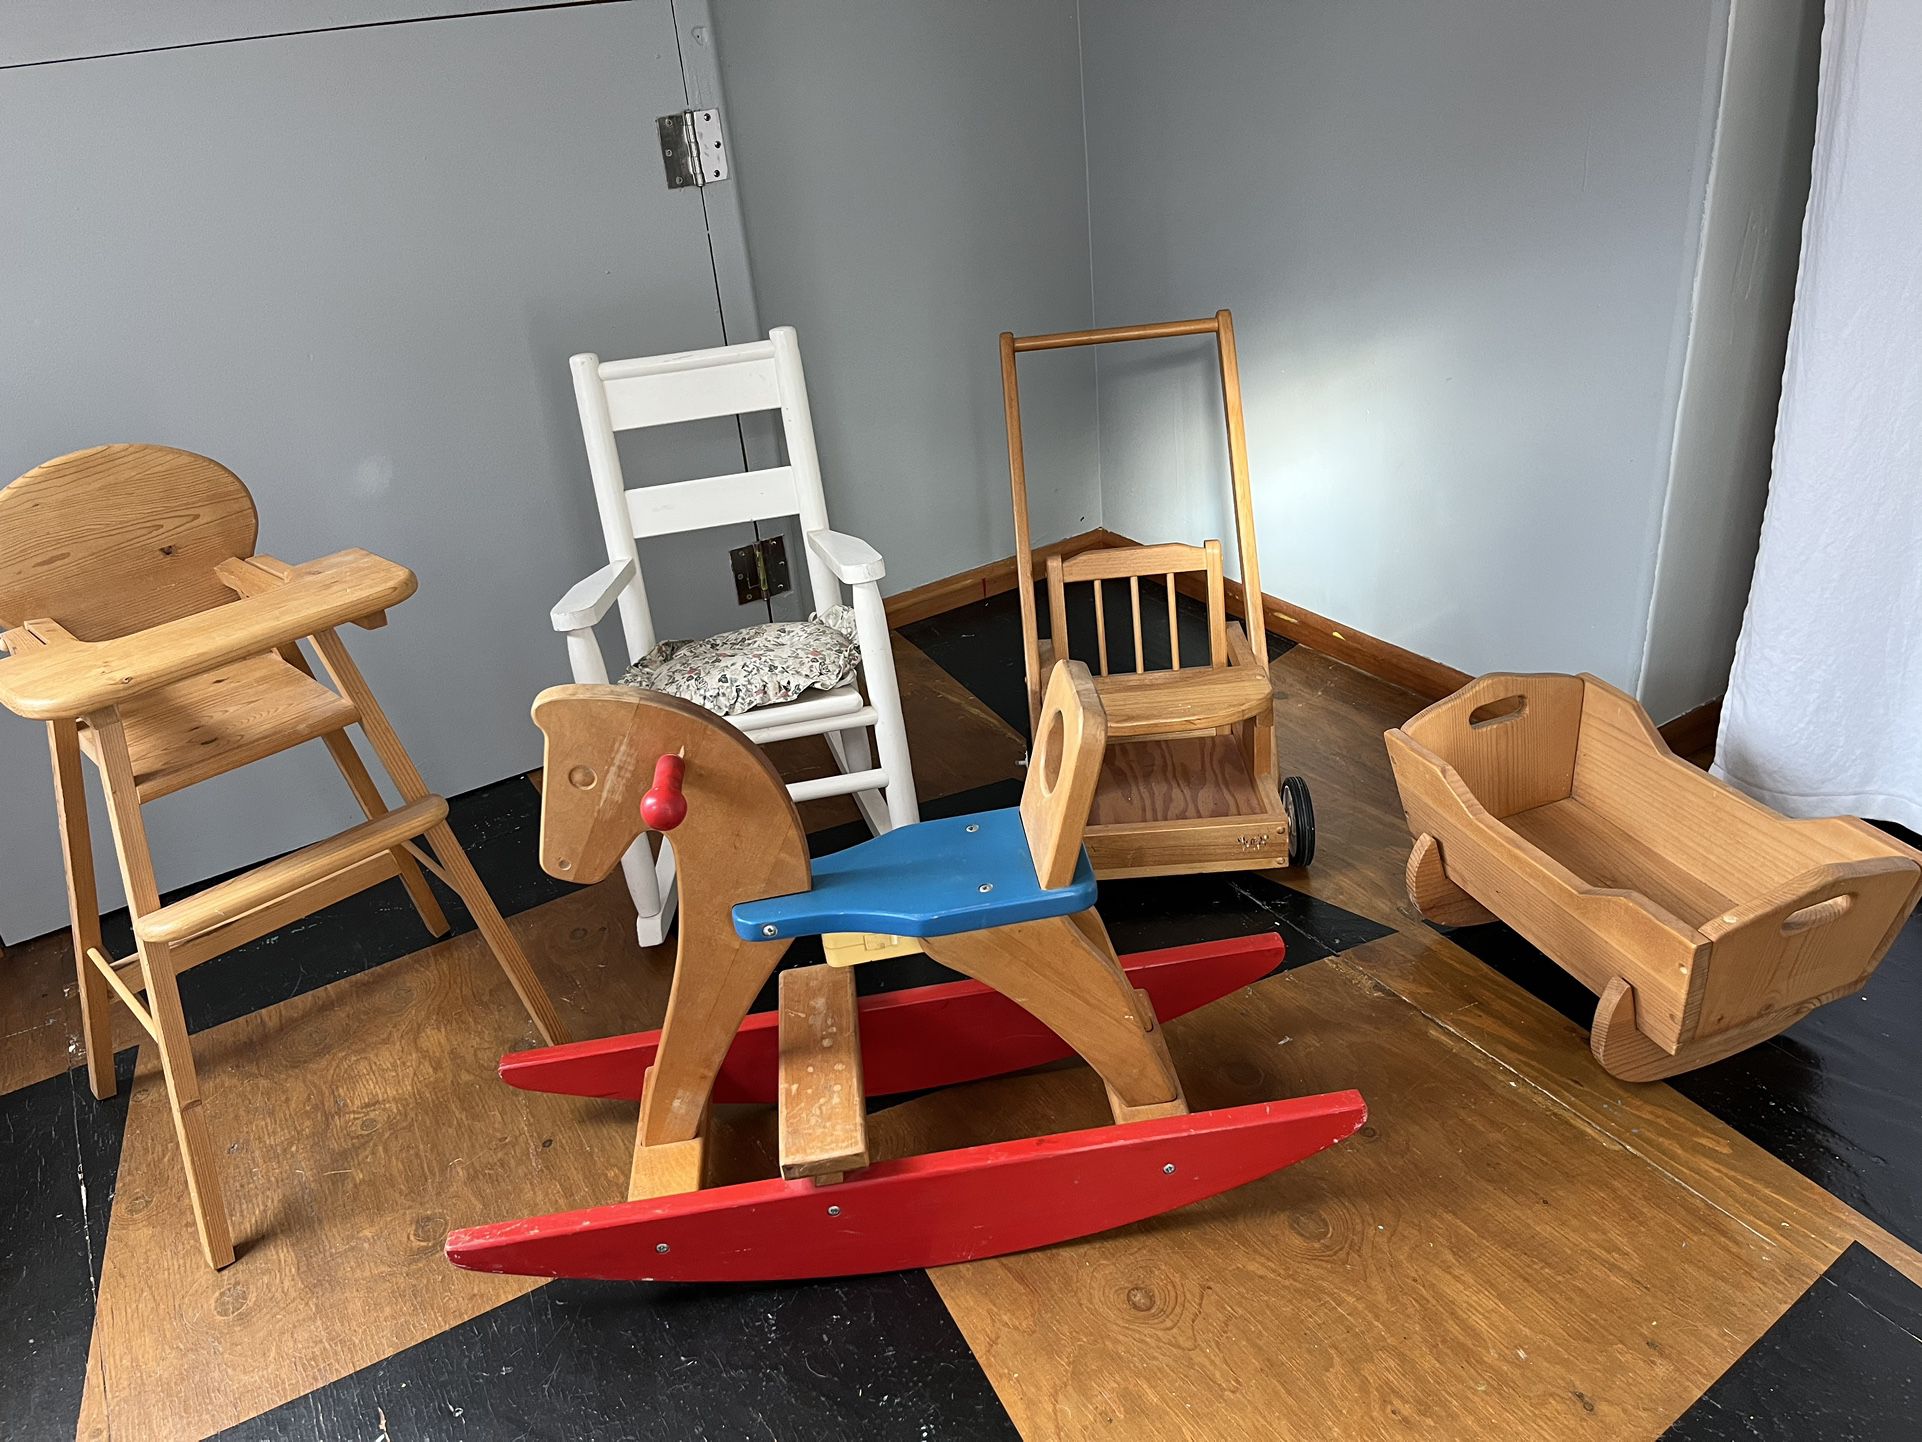 Children’s Wooden Furniture 